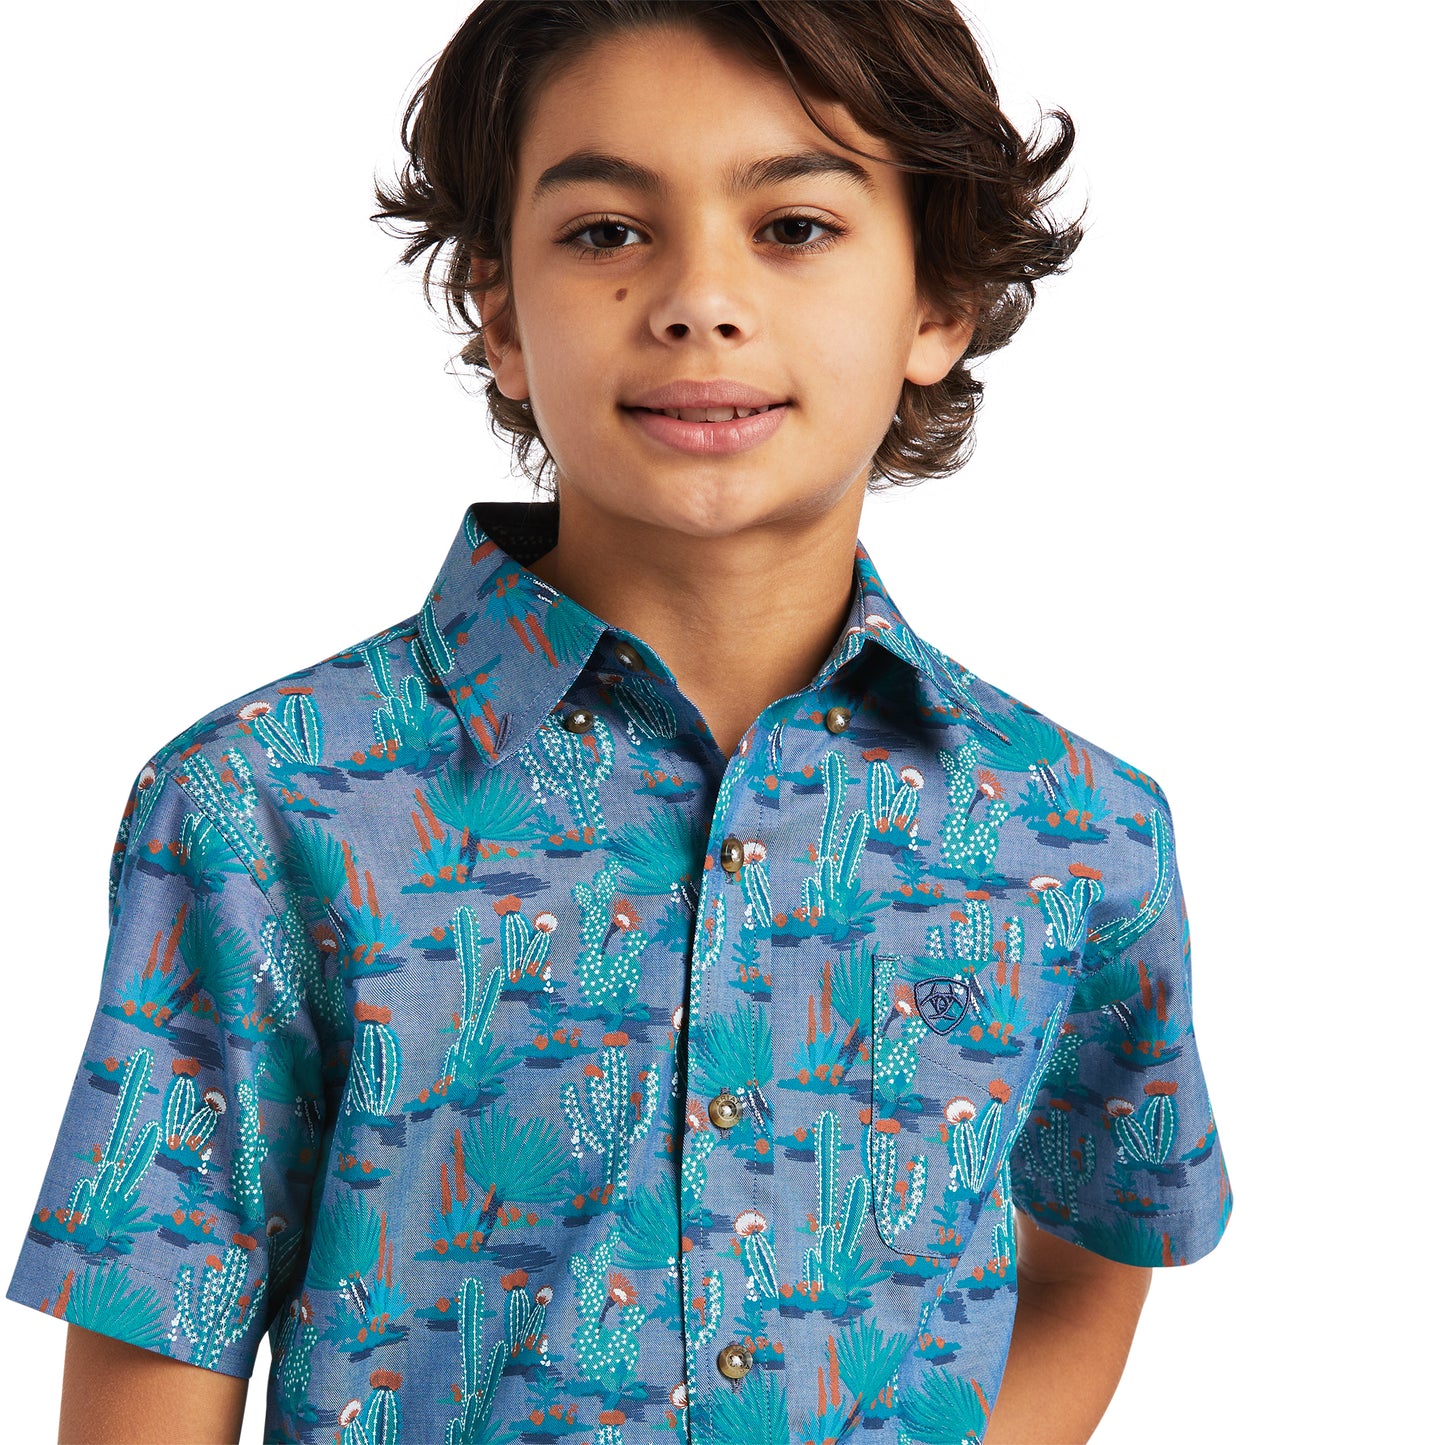 Ariat® Boy's Casual Series Short Sleeve Daxton Mint Shirt 10039519